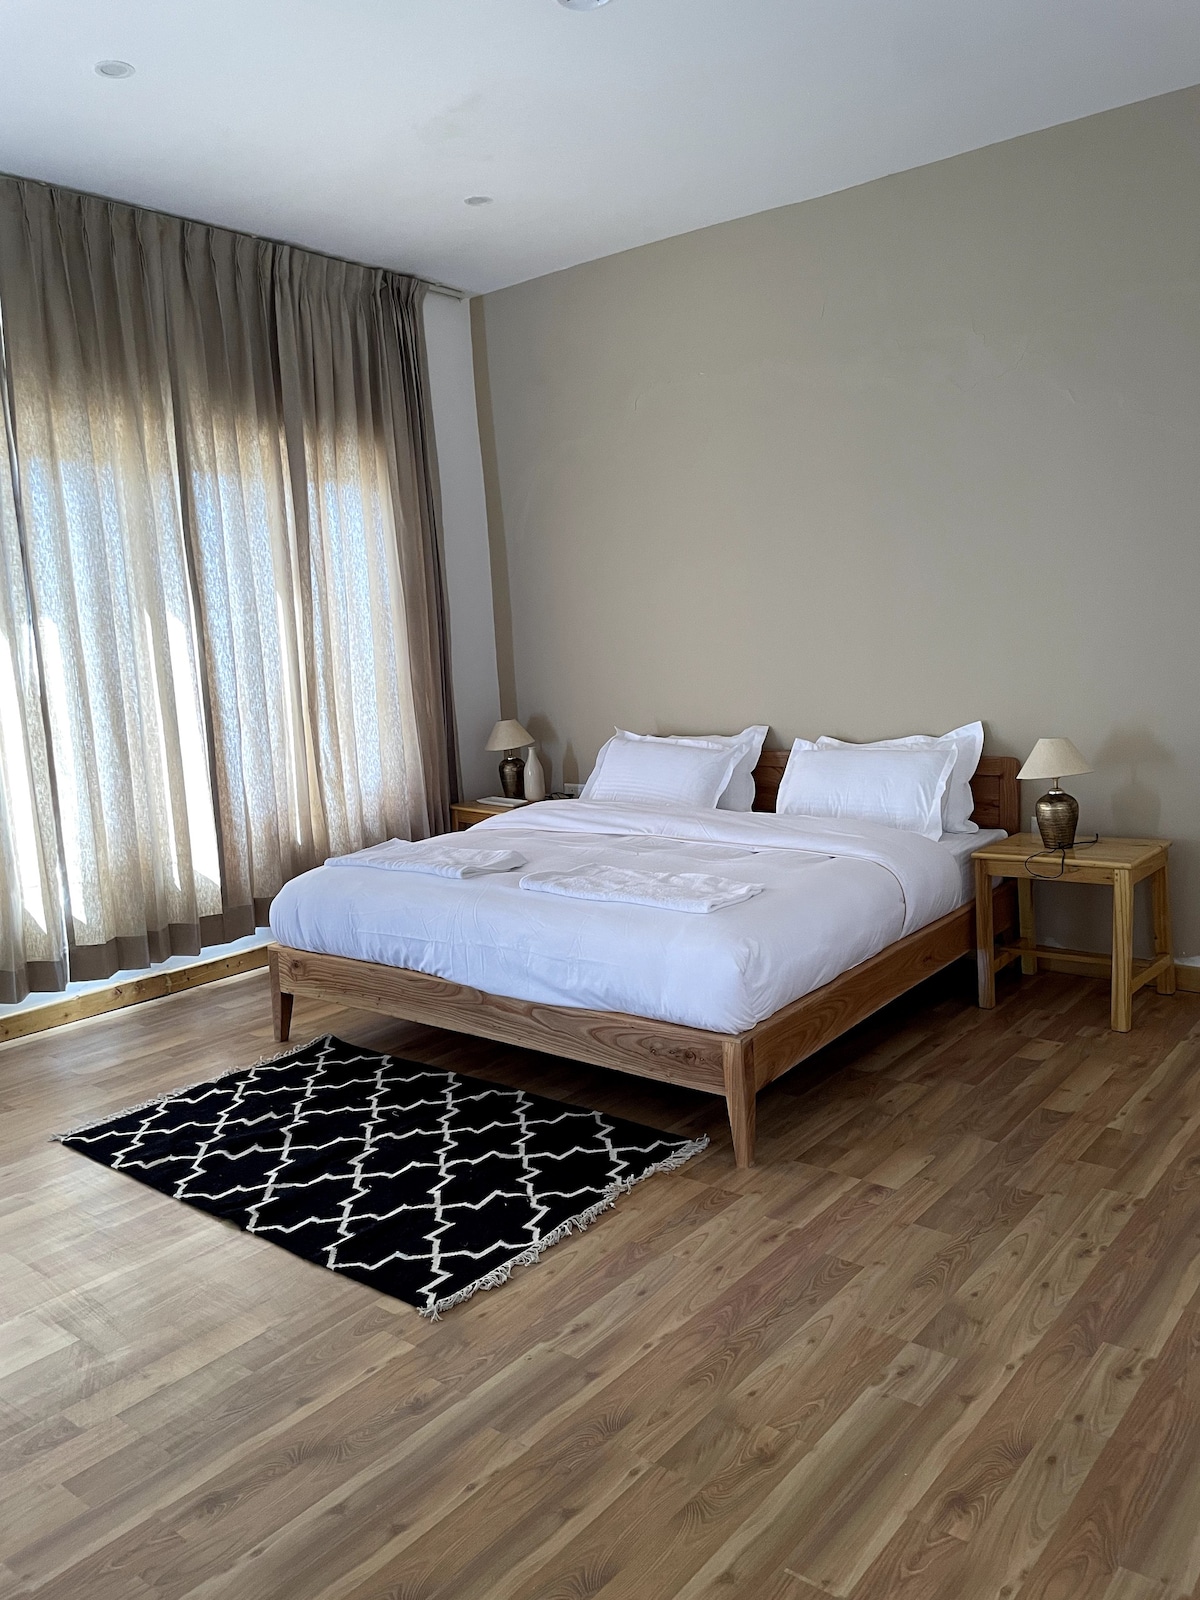 Room in Leh
Dgha-Ldhan Guest House